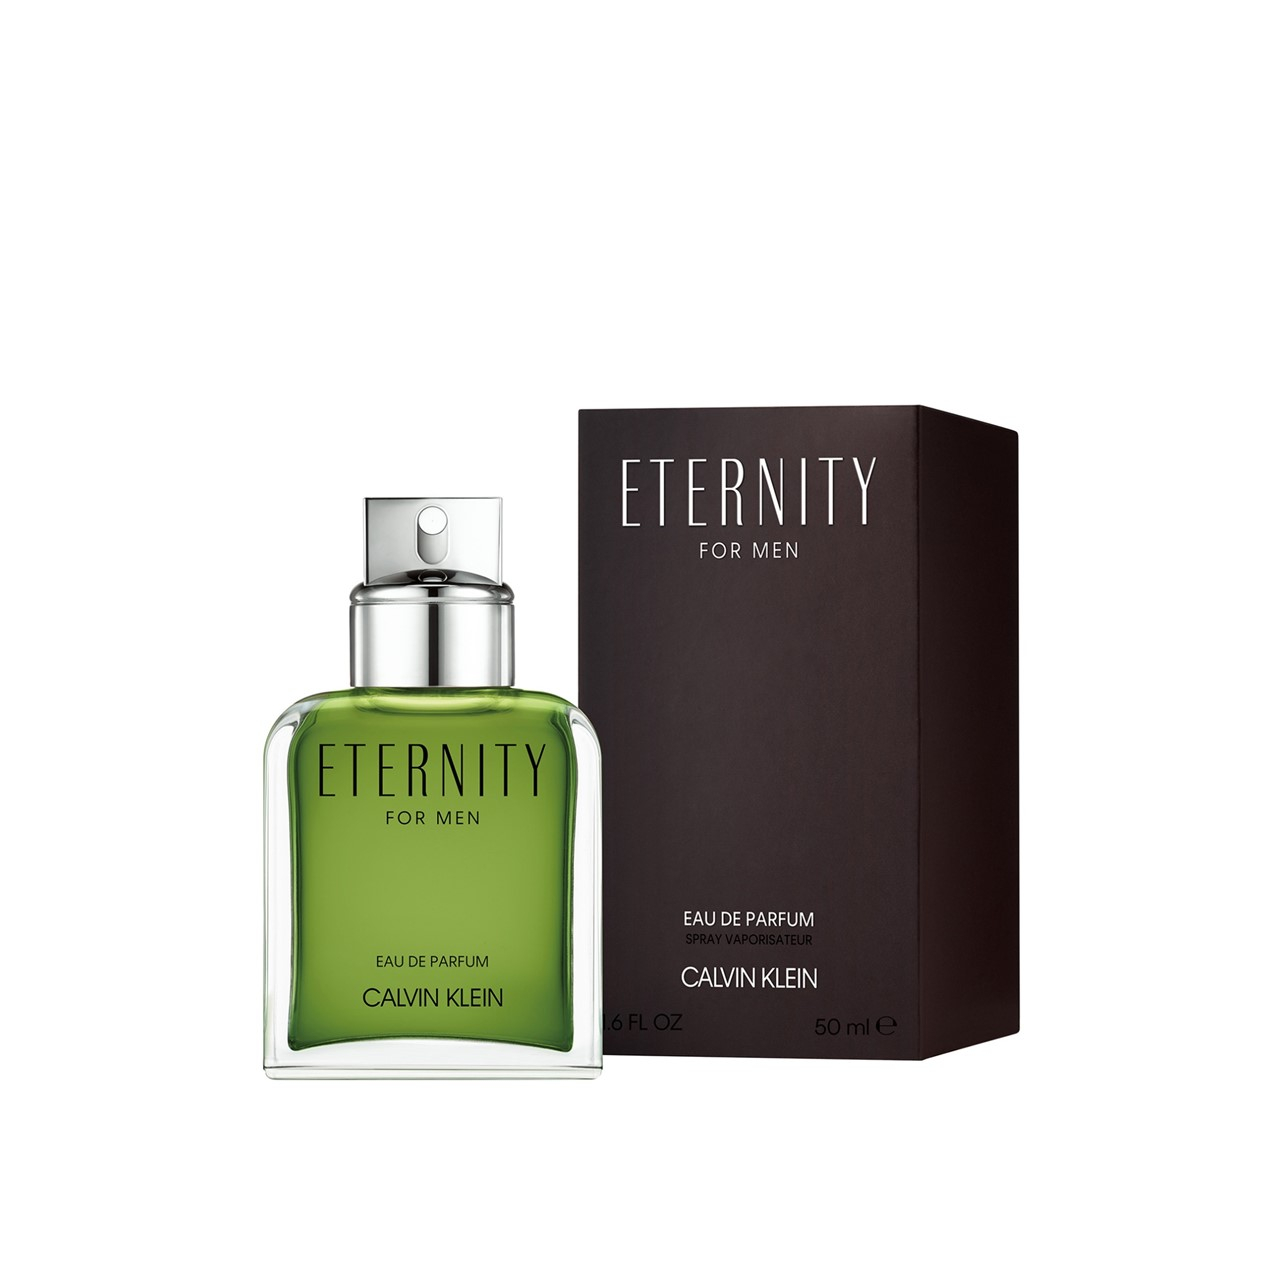 Calvin Klein Eternity For Men Eau de Parfum 50ml (1.7fl oz)